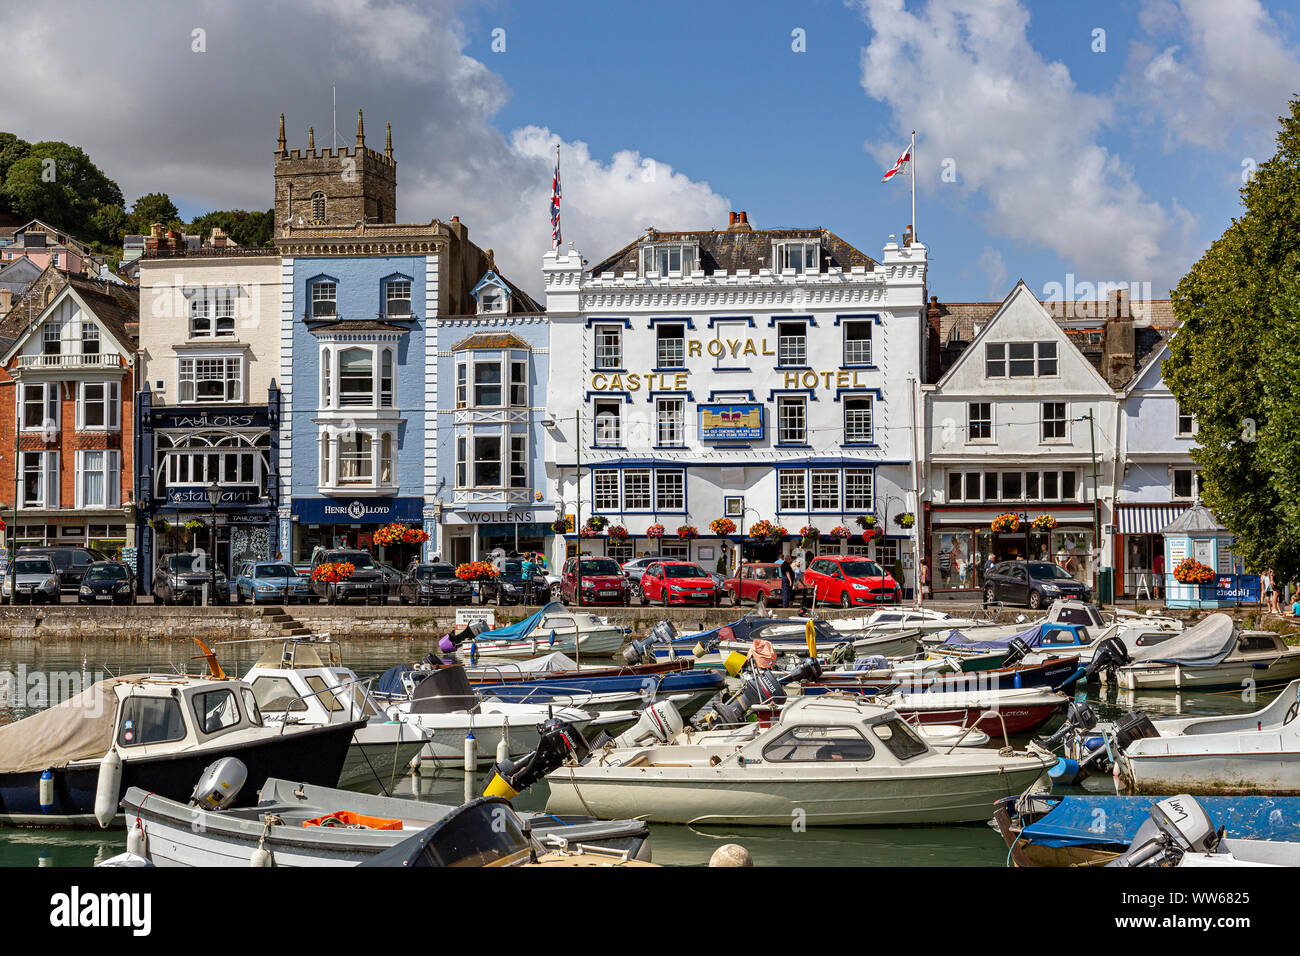 Dartmouth - Inghilterra, Devon, Vaso nautico, Architettura, Blu, esterno dell'edificio, Business, Cityscape, coste, Dart River, Inghilterra, l'ambiente, Foto Stock